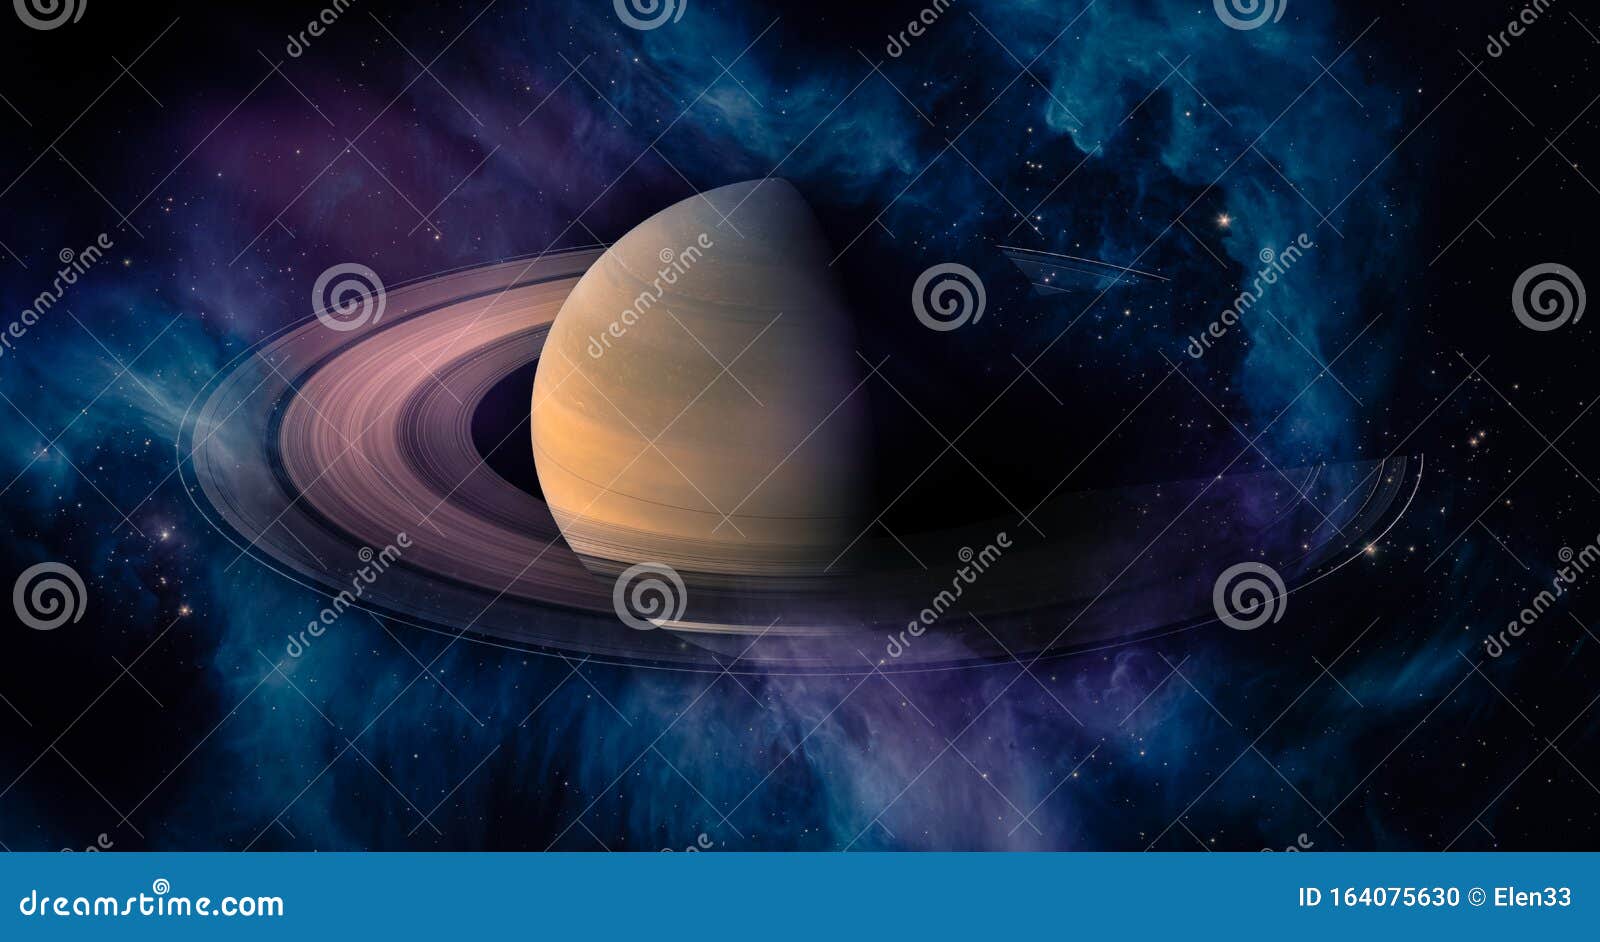 星星环绕宇宙尘云的土星太阳系科学壁纸库存例证 插画包括有科学壁纸 星星环绕宇宙尘云的土星太阳系